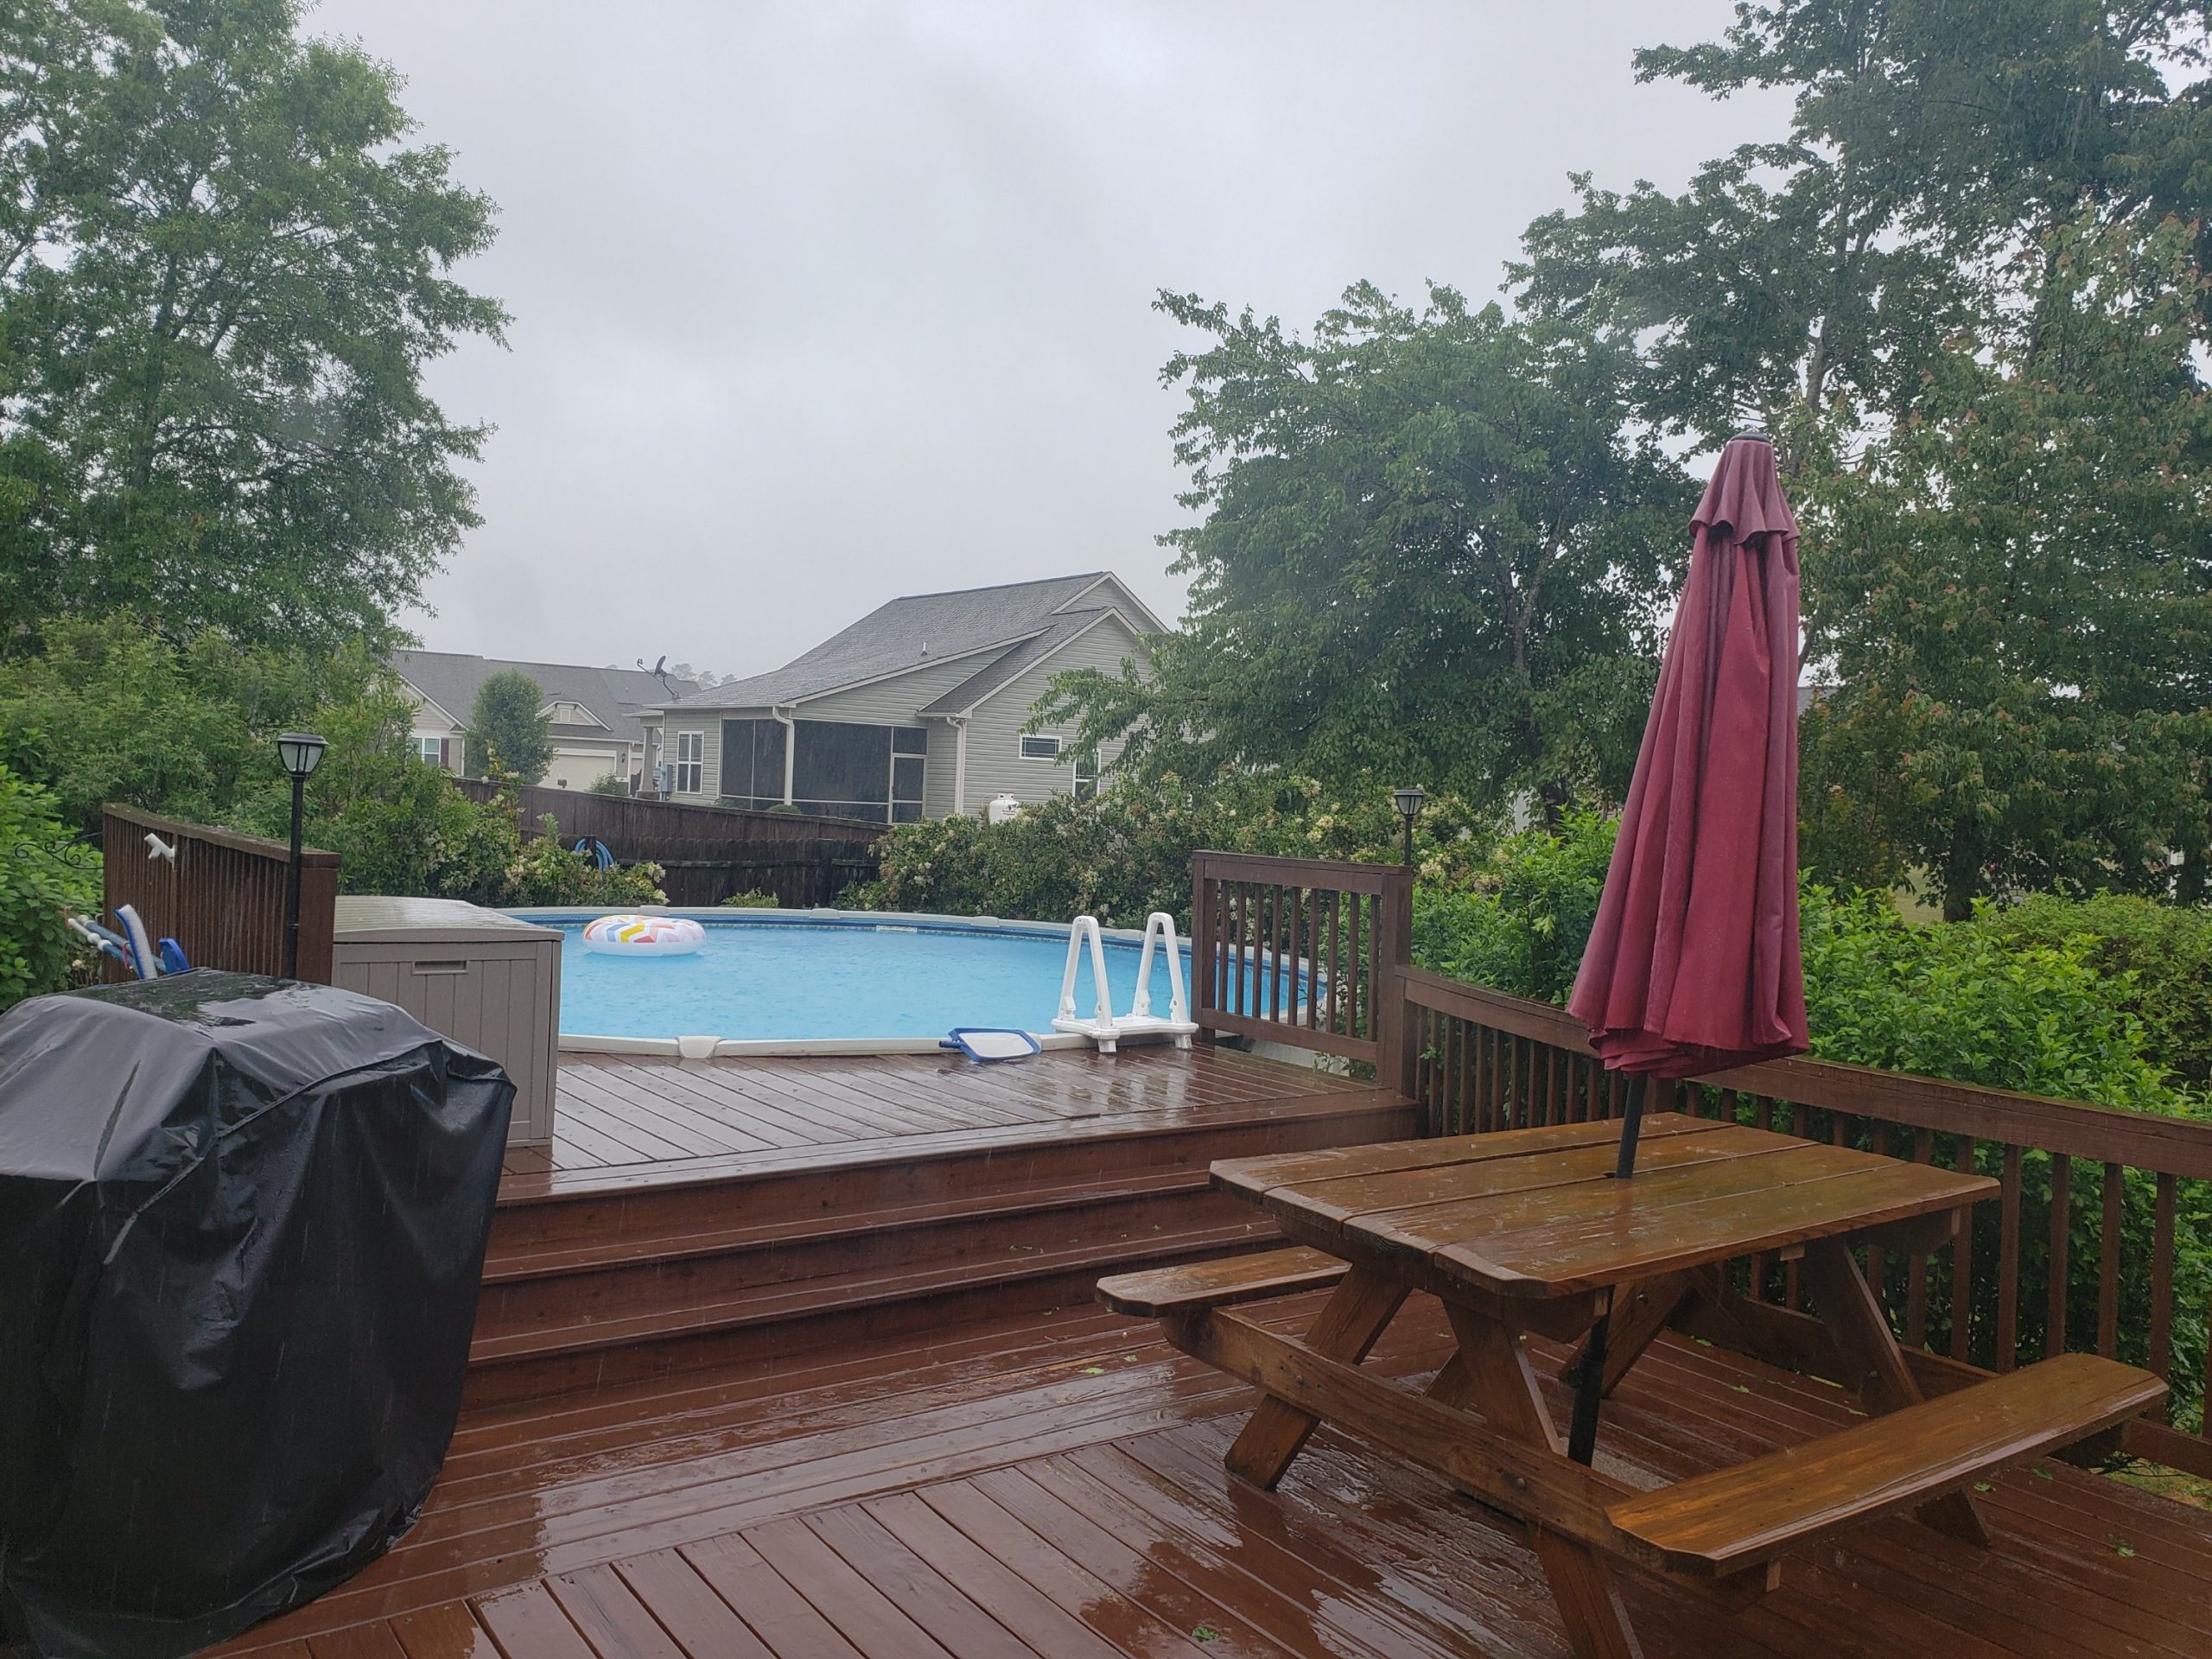 Backyard and Pool in the Rain